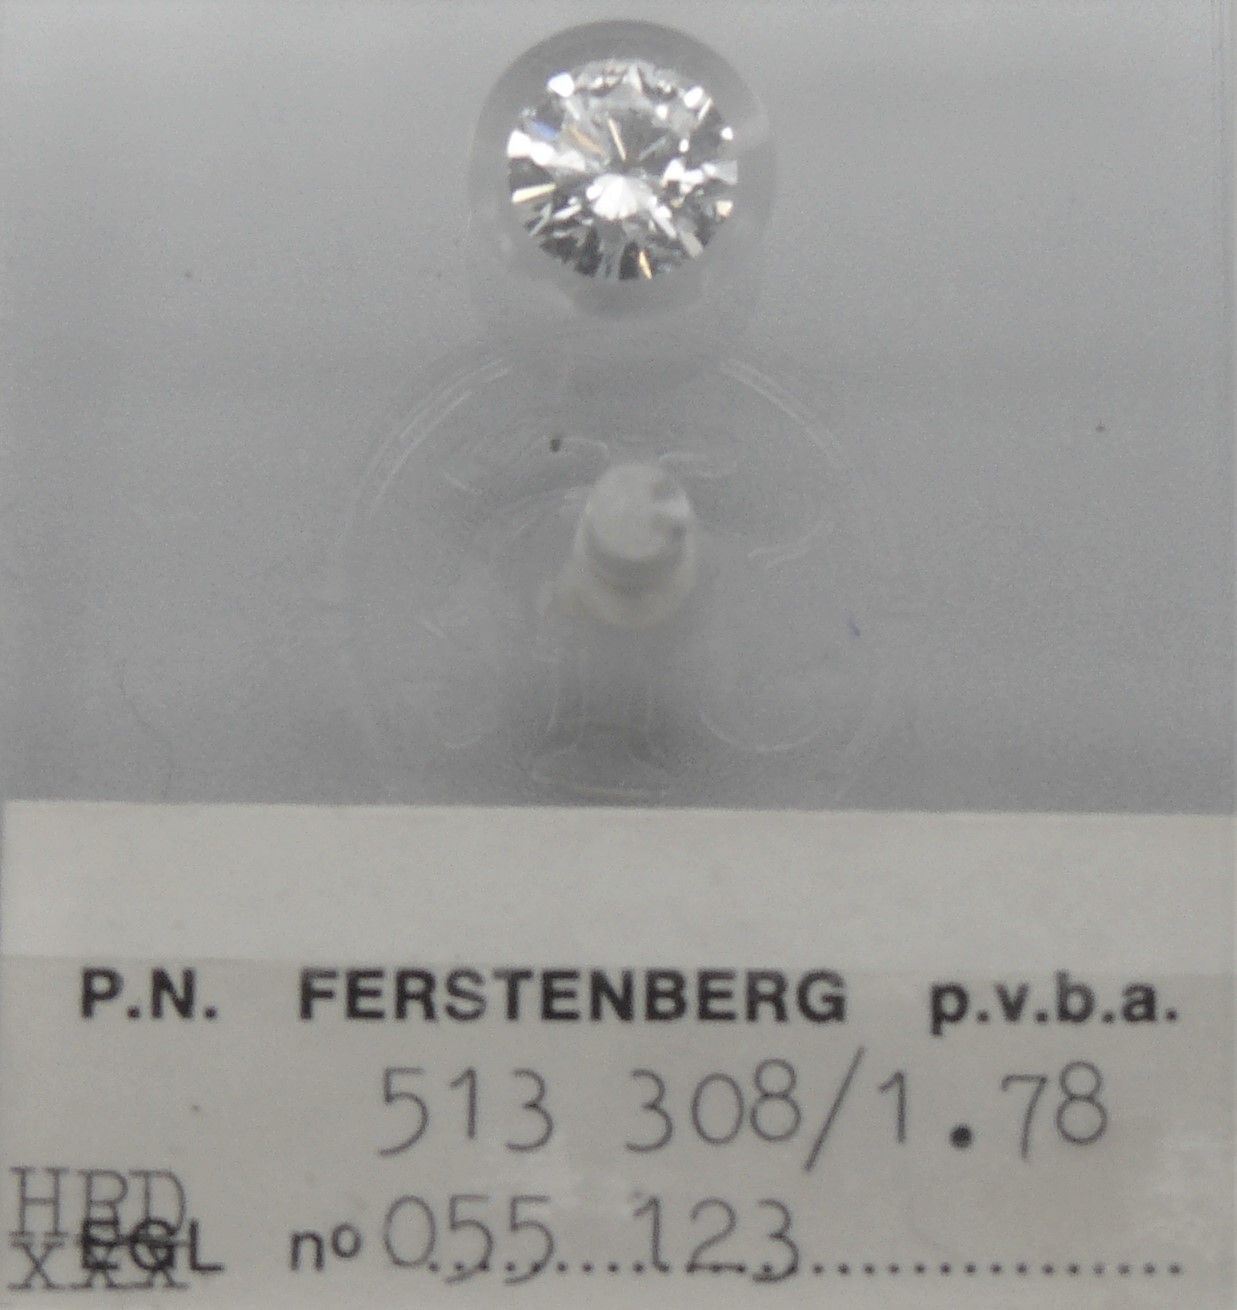 FERSTENBERG a diamond No. 513 308, under seal: weighing 1.78 carats, round brill&hellip;